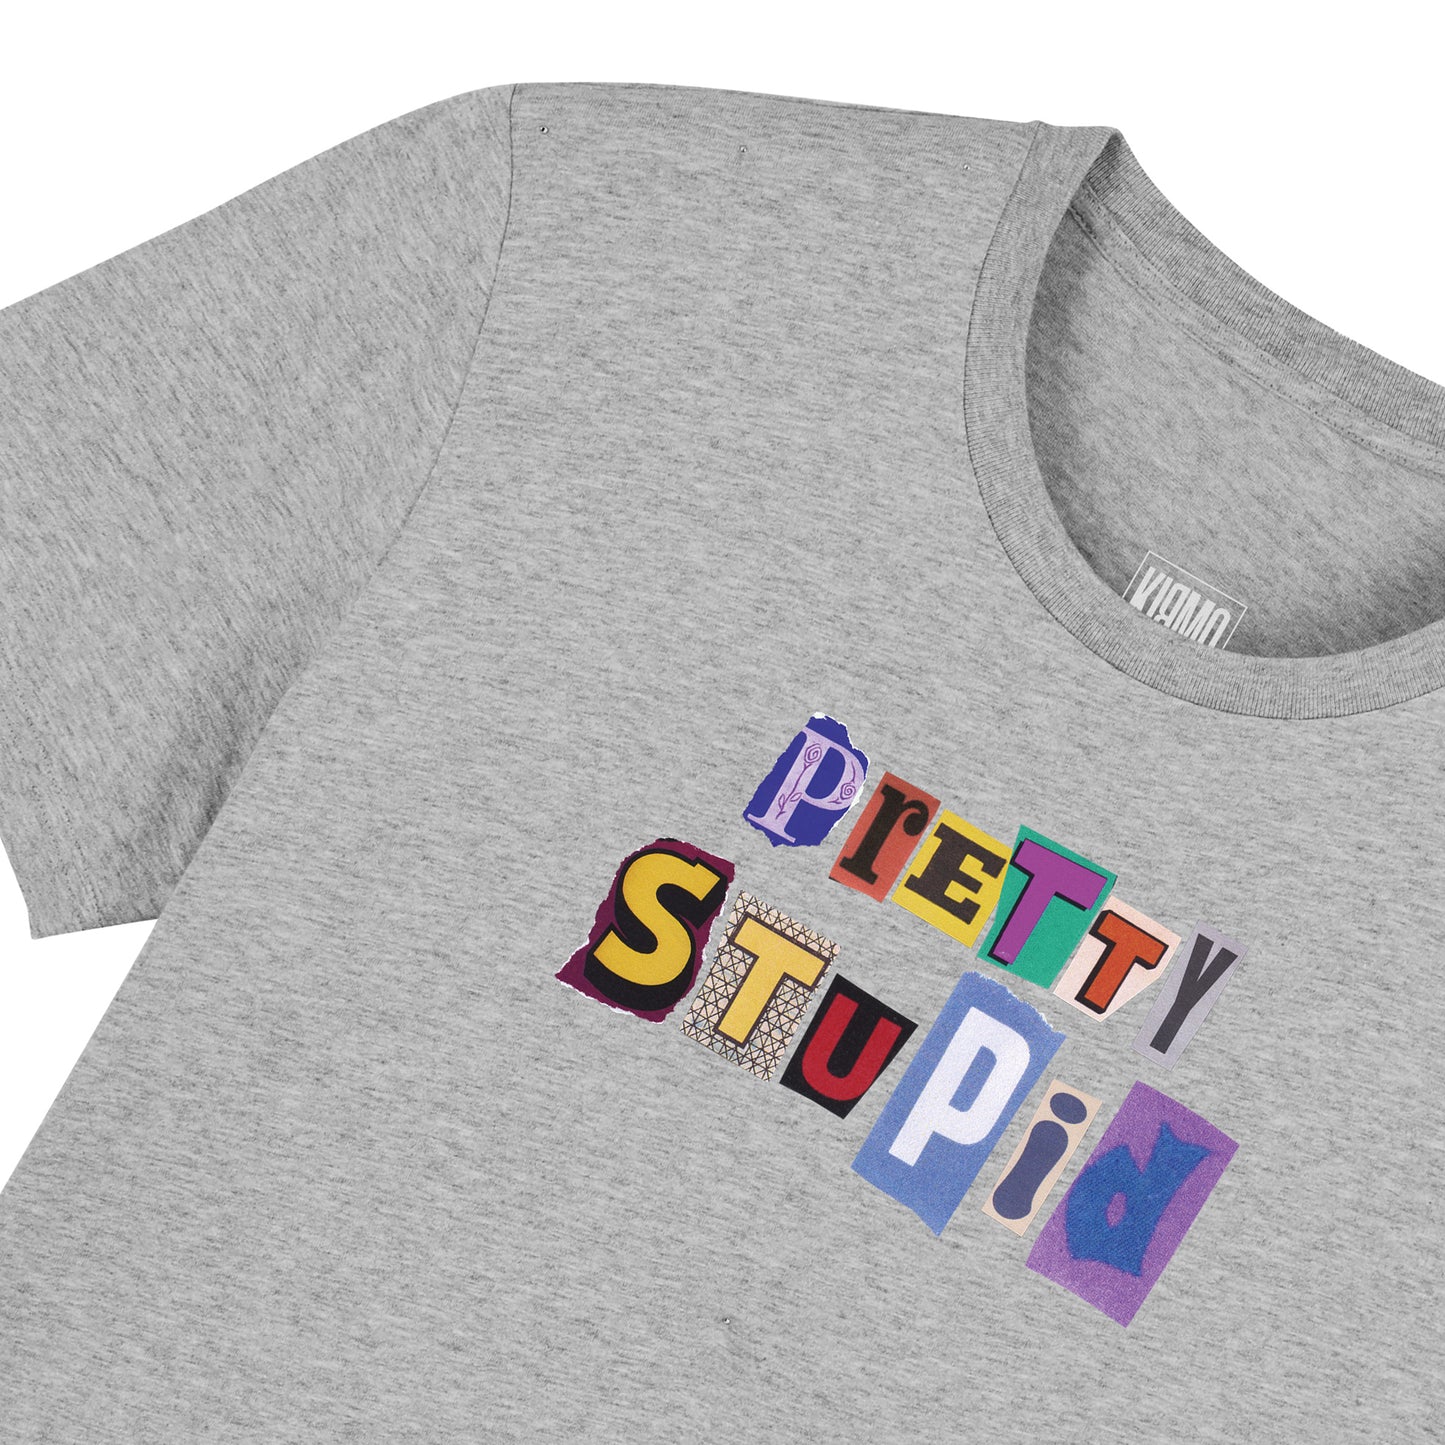 Ransom T-Shirt - Pretty Stupid